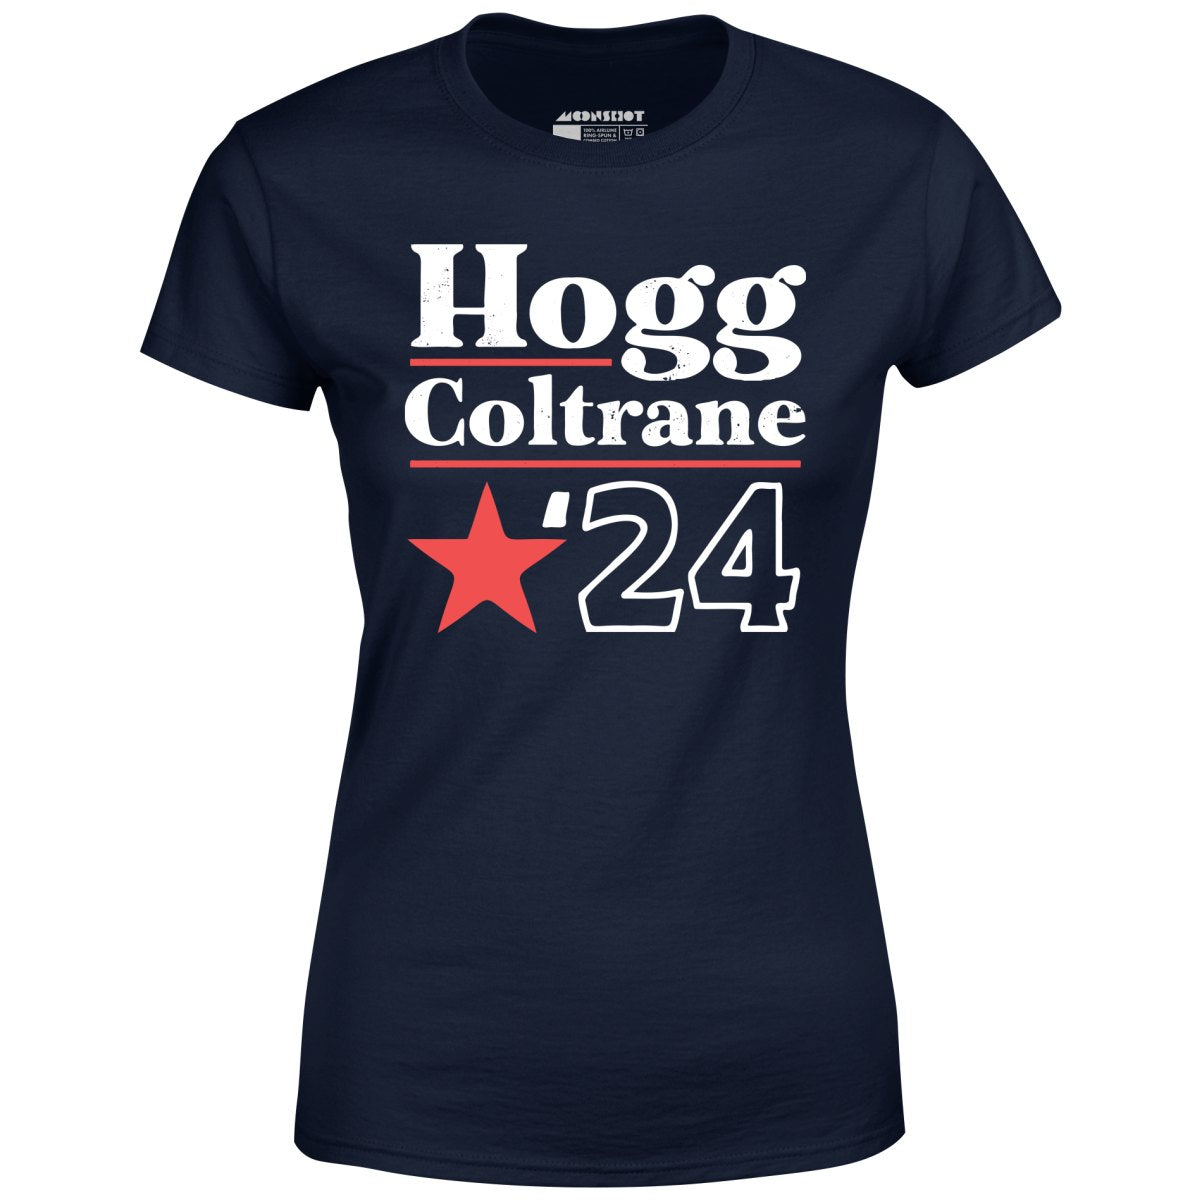 Hogg Coltrane 2024 - Women's T-Shirt